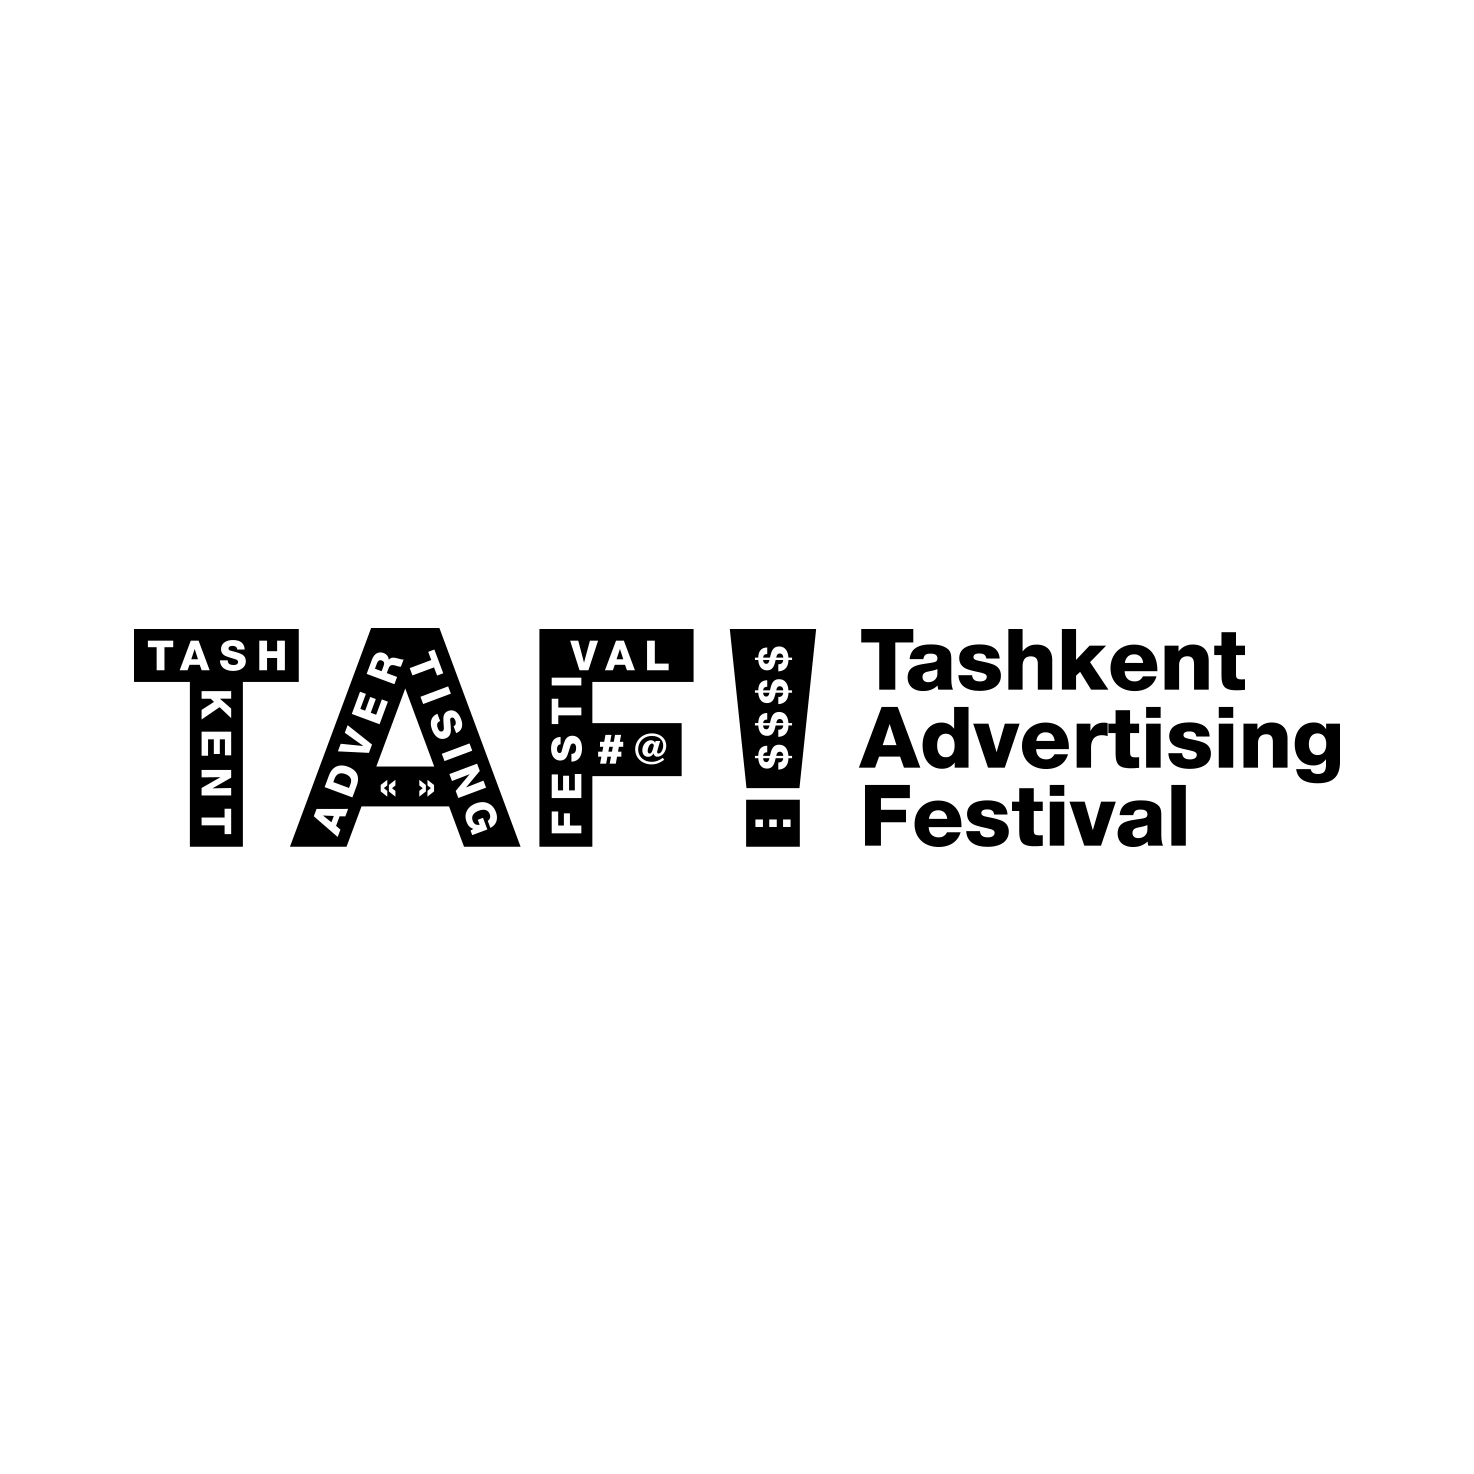 TAF! Tashkent Advertising Festival